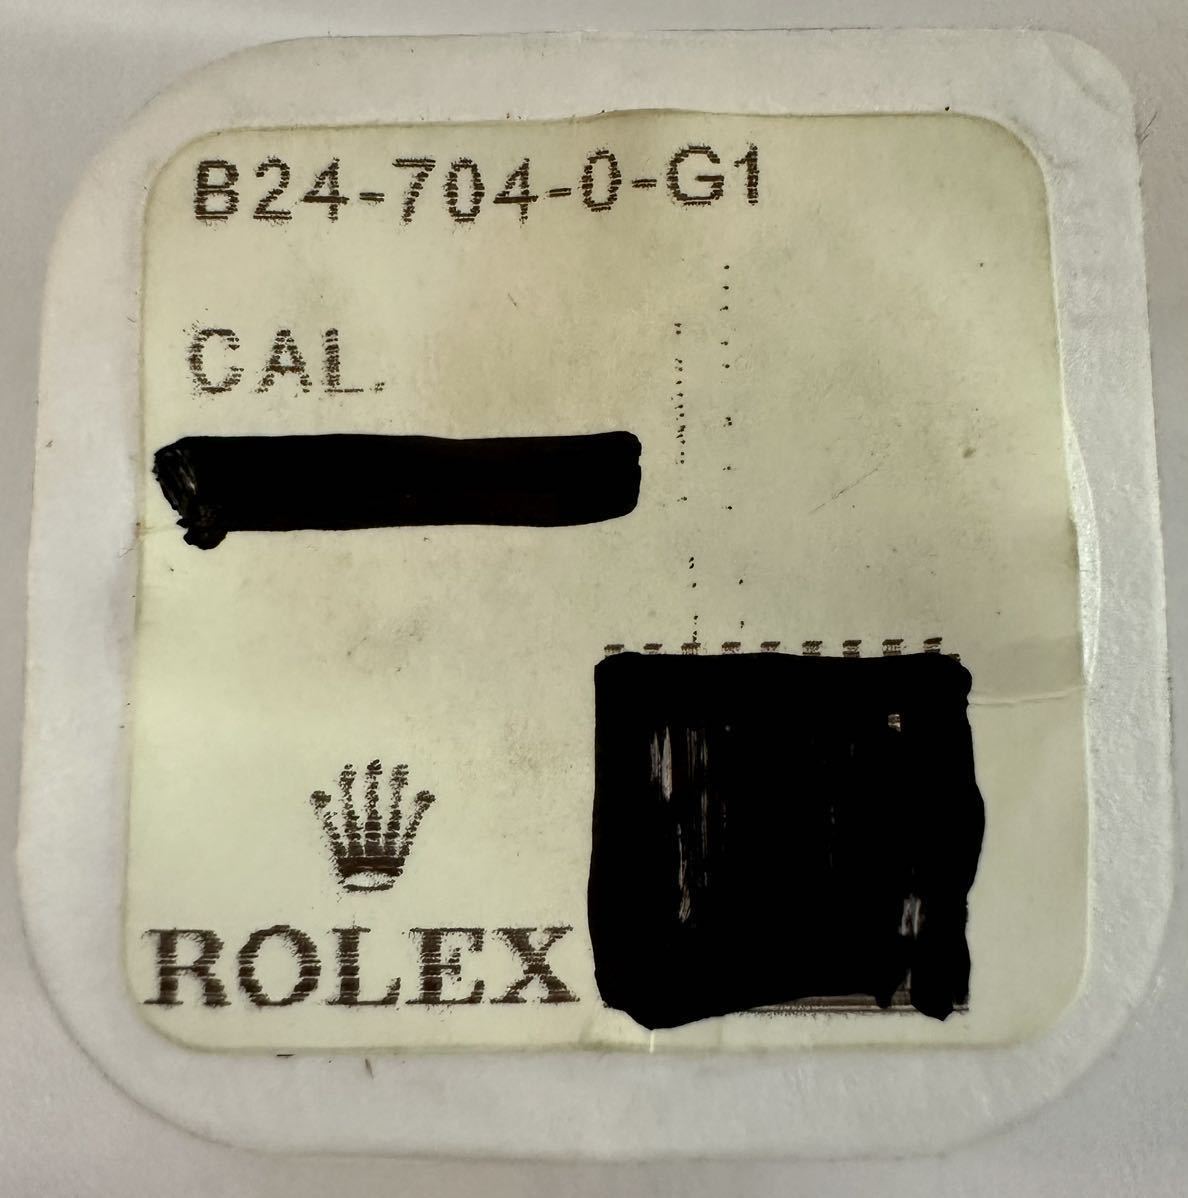 ロレックス　Rolex 24-704-0-G1 リューズ　新品